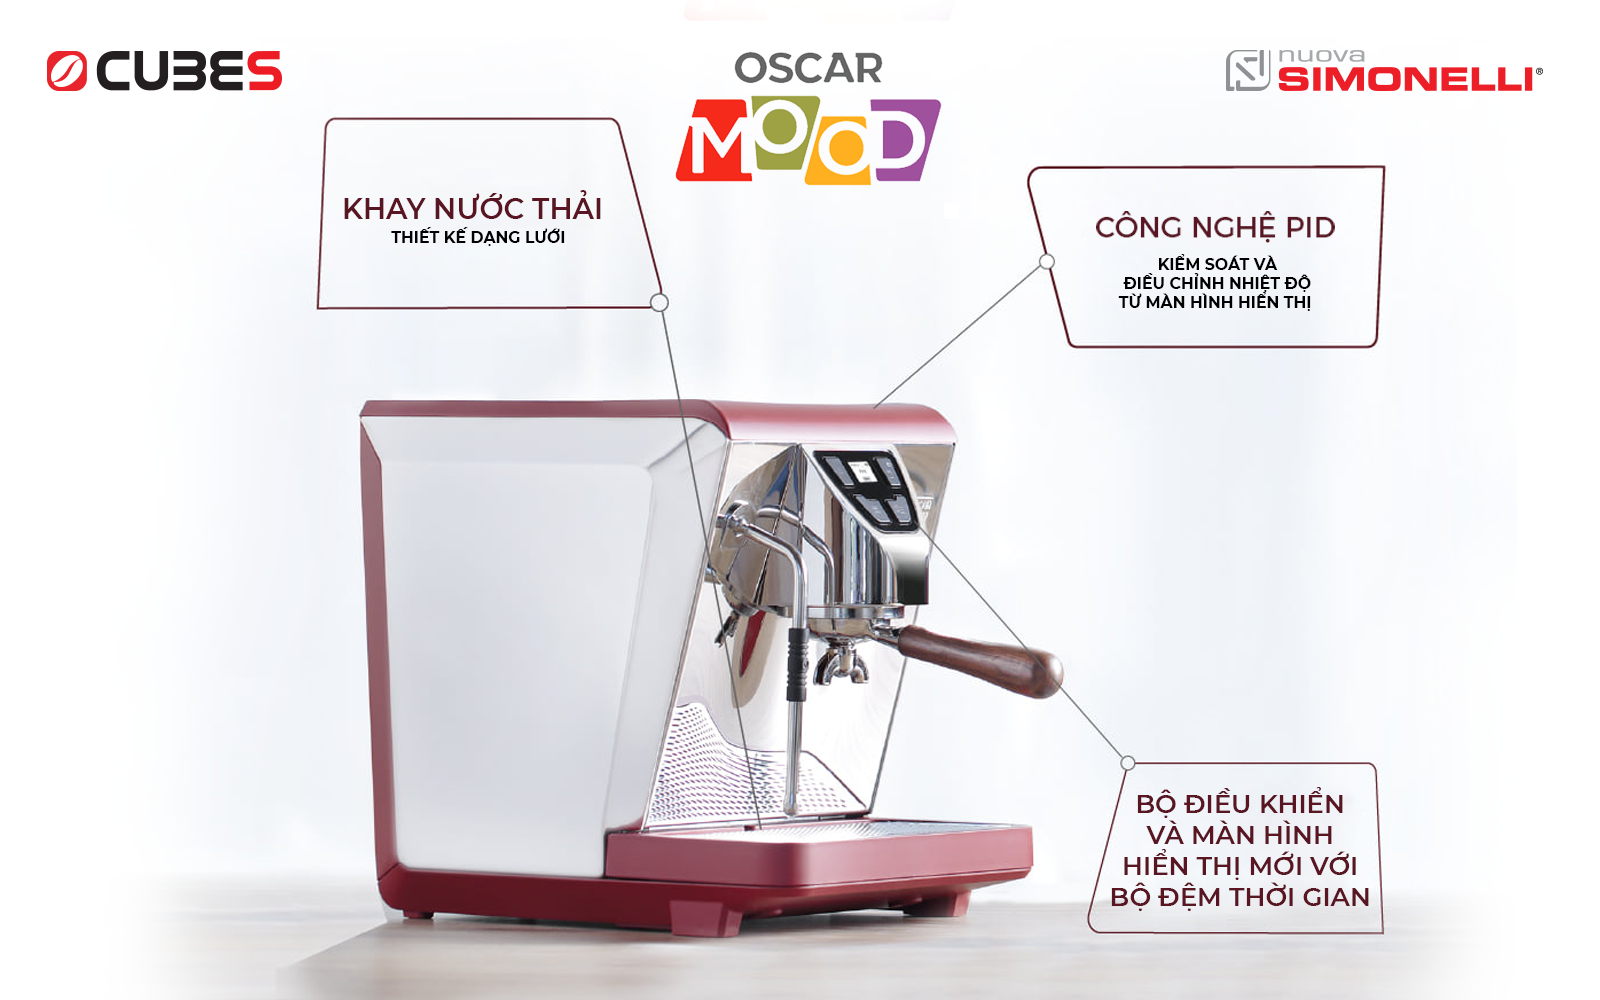 5 lý do máy pha cà phê Nuova Simonelli Oscar Mood vừa ra mắt đã được đánh giá là hoàn hảo với mọi nơi - Ảnh 3.